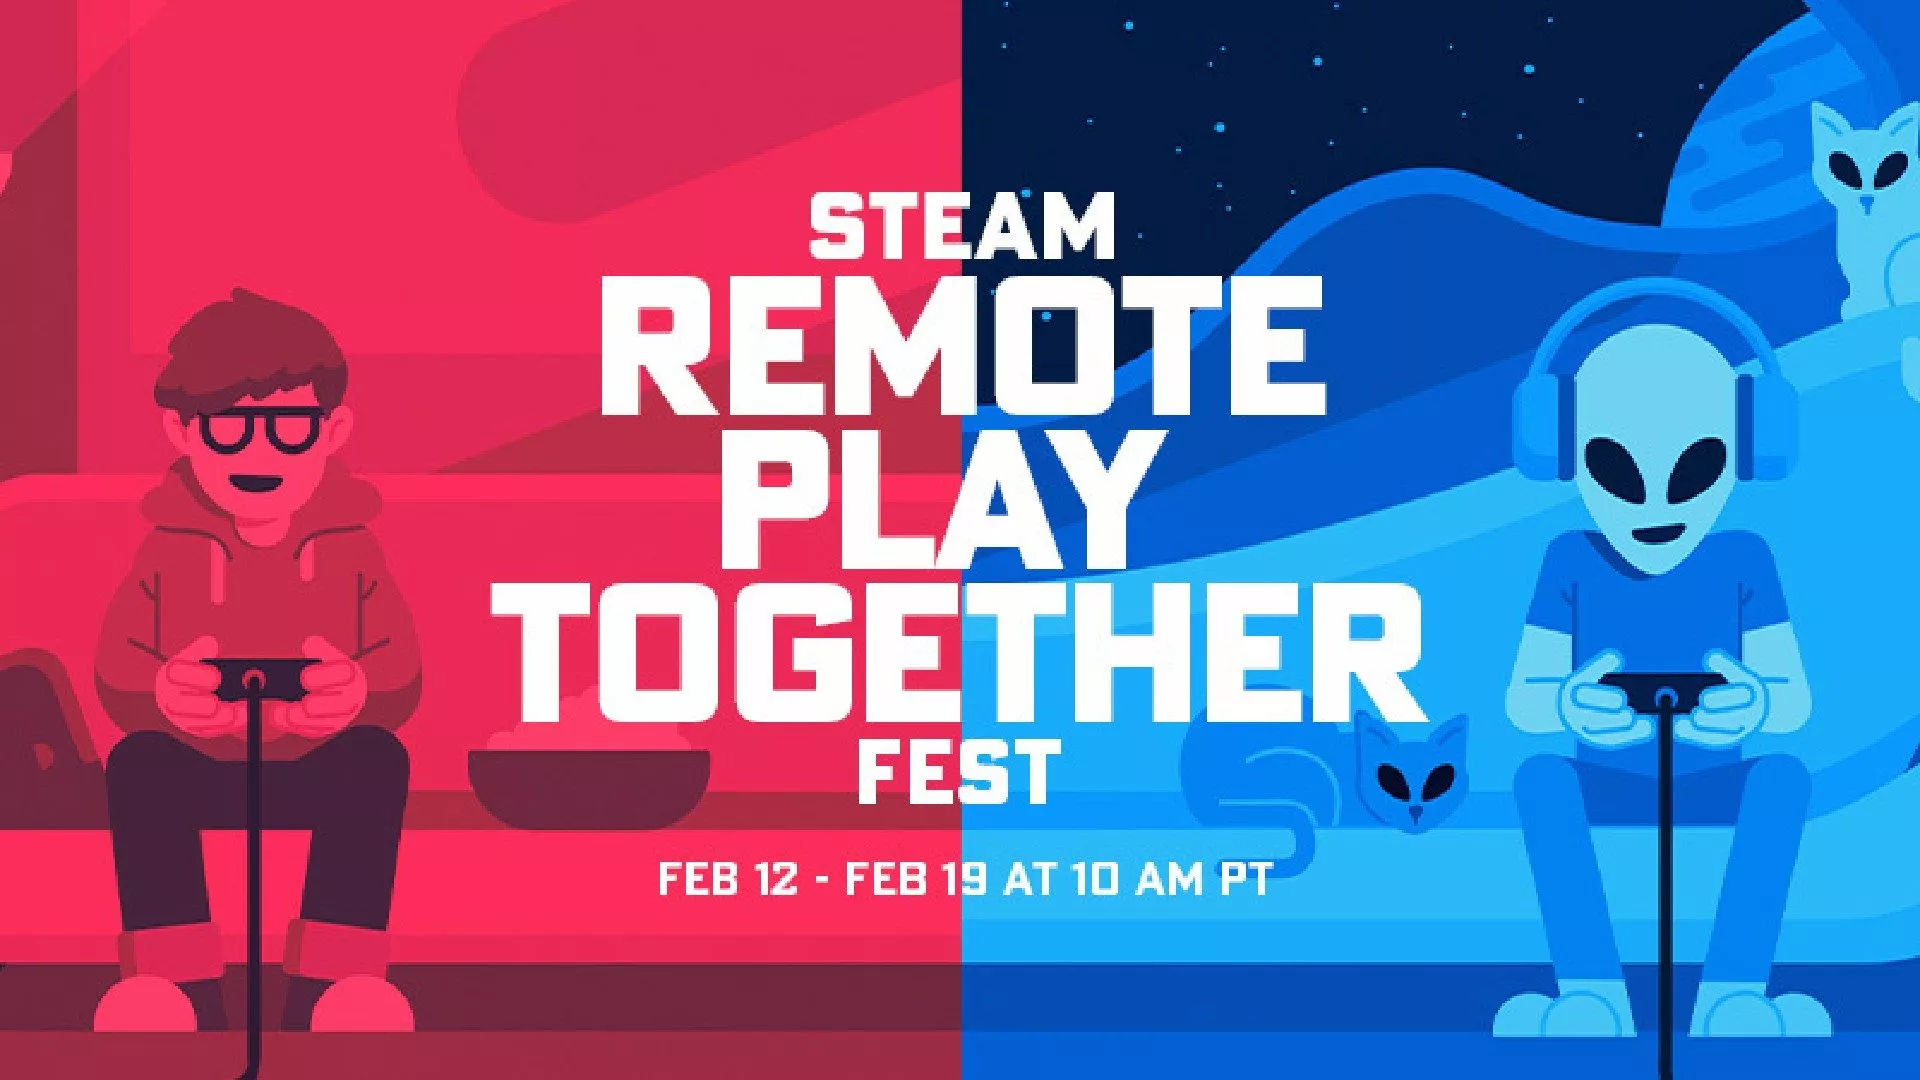 Werbebanner für Steam Remote Play Together Aktion